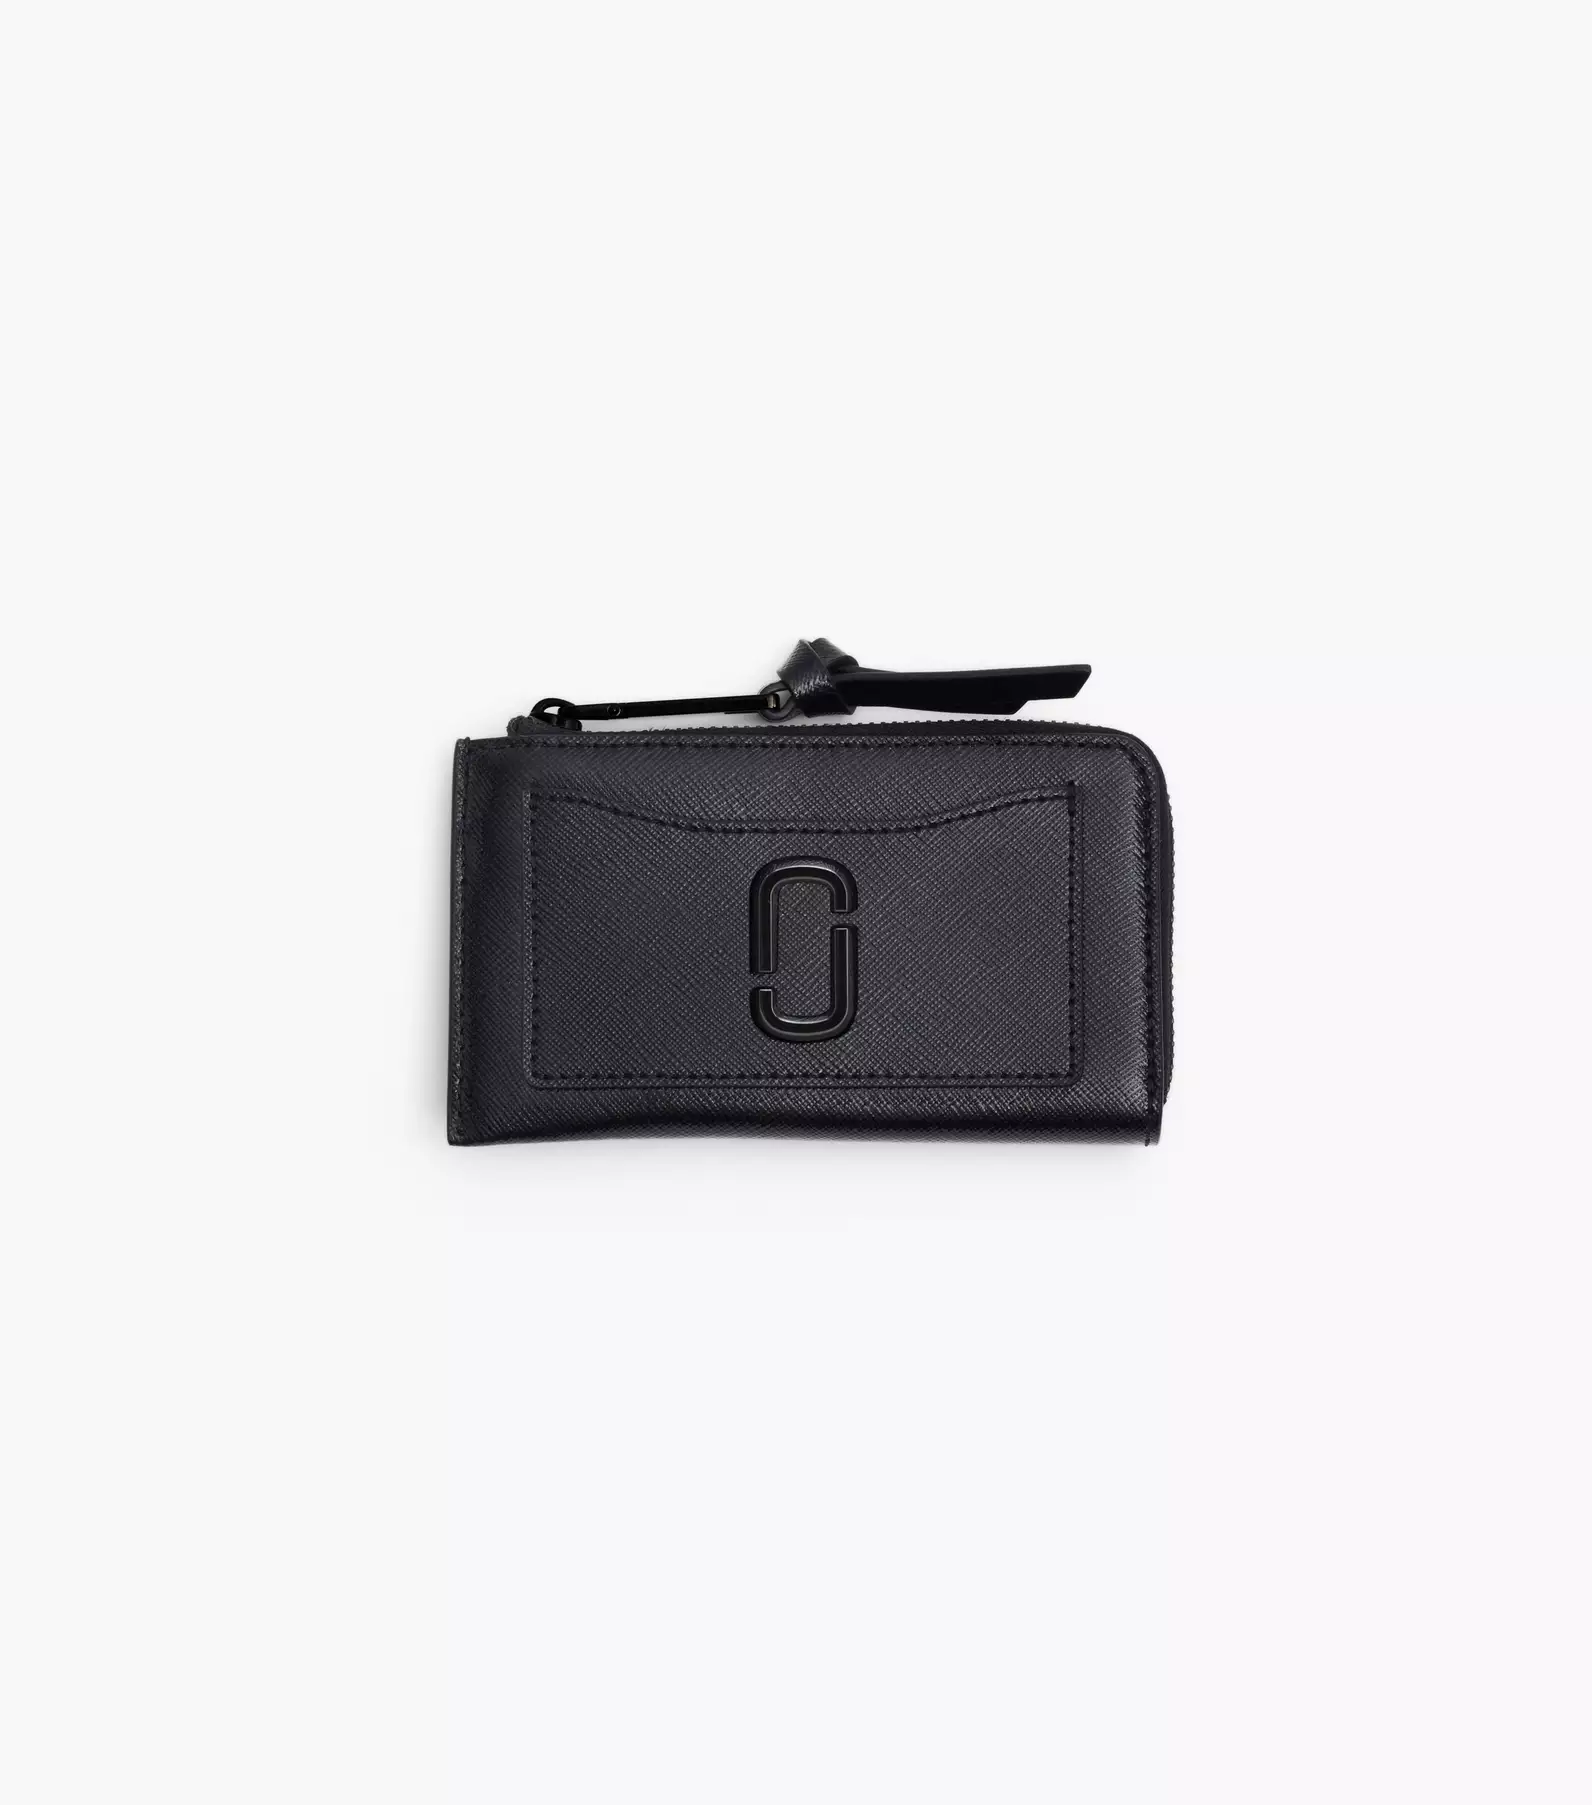 Marc Jacobs Snapshot DTM Leather Bag - Black